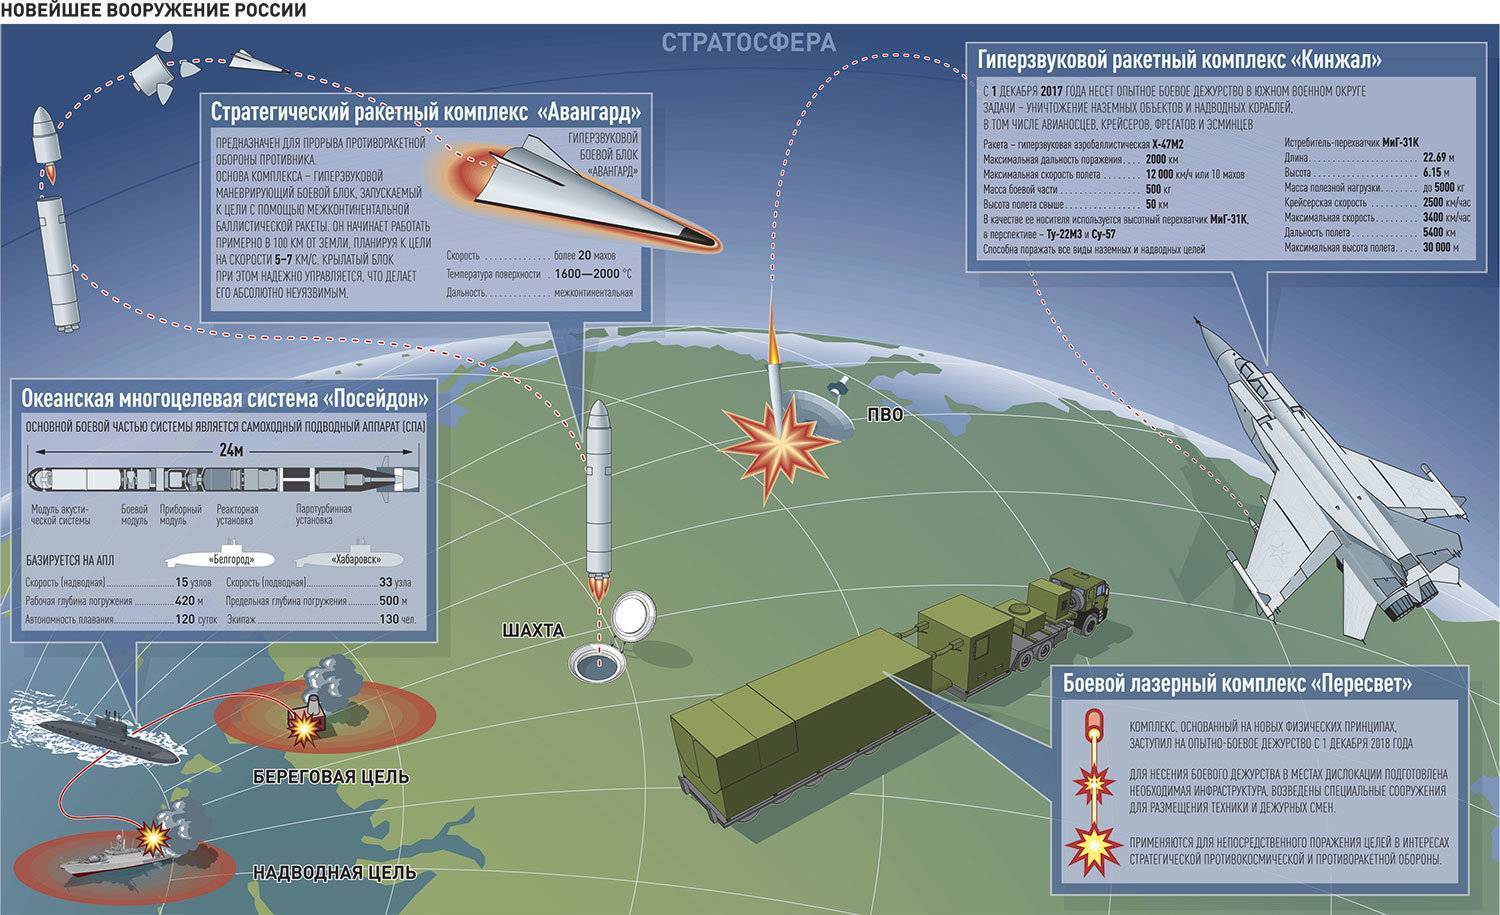 Оперативно-технические ракетные комплексы или полевая ракетная артиллерия